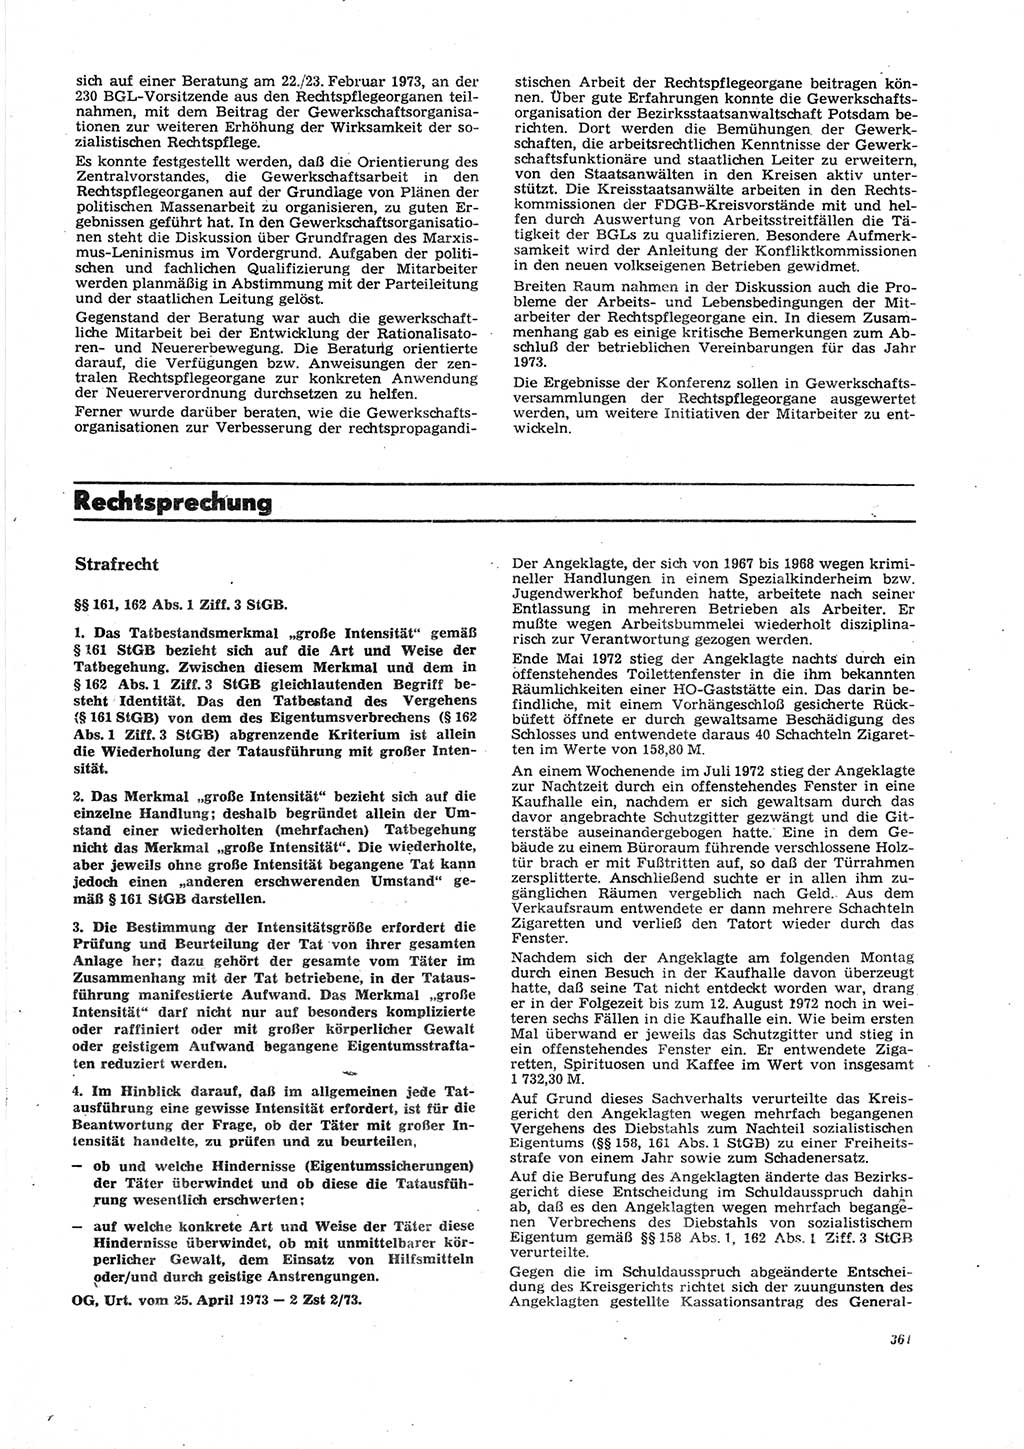 Neue Justiz (NJ), Zeitschrift für Recht und Rechtswissenschaft [Deutsche Demokratische Republik (DDR)], 27. Jahrgang 1973, Seite 361 (NJ DDR 1973, S. 361)